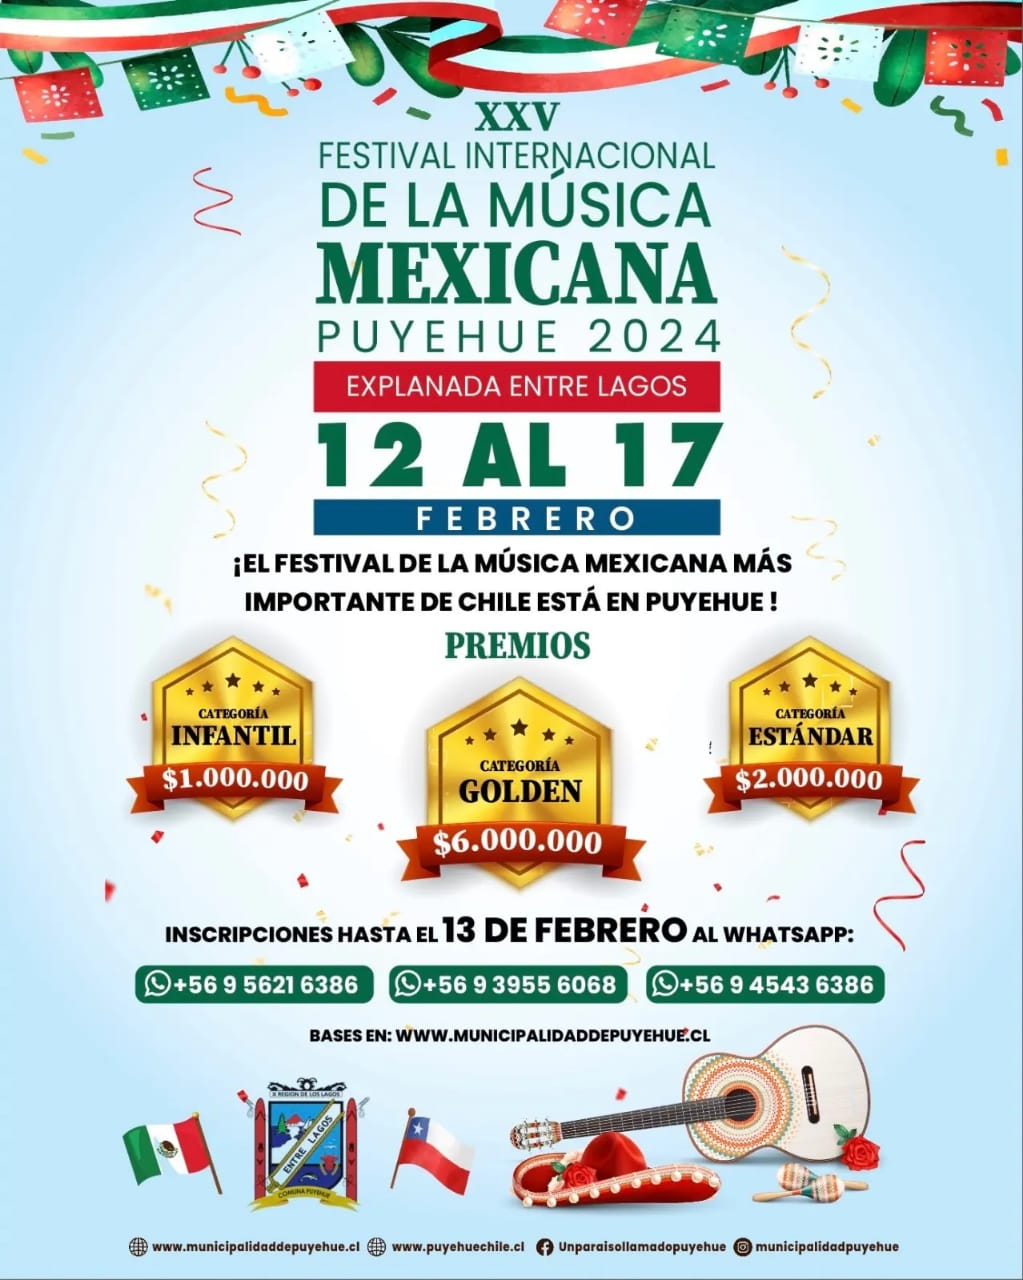 Municipalidad de Puyehue abre inscripciones para audiciones del Festival Internacional de la Música Mexicana 2024